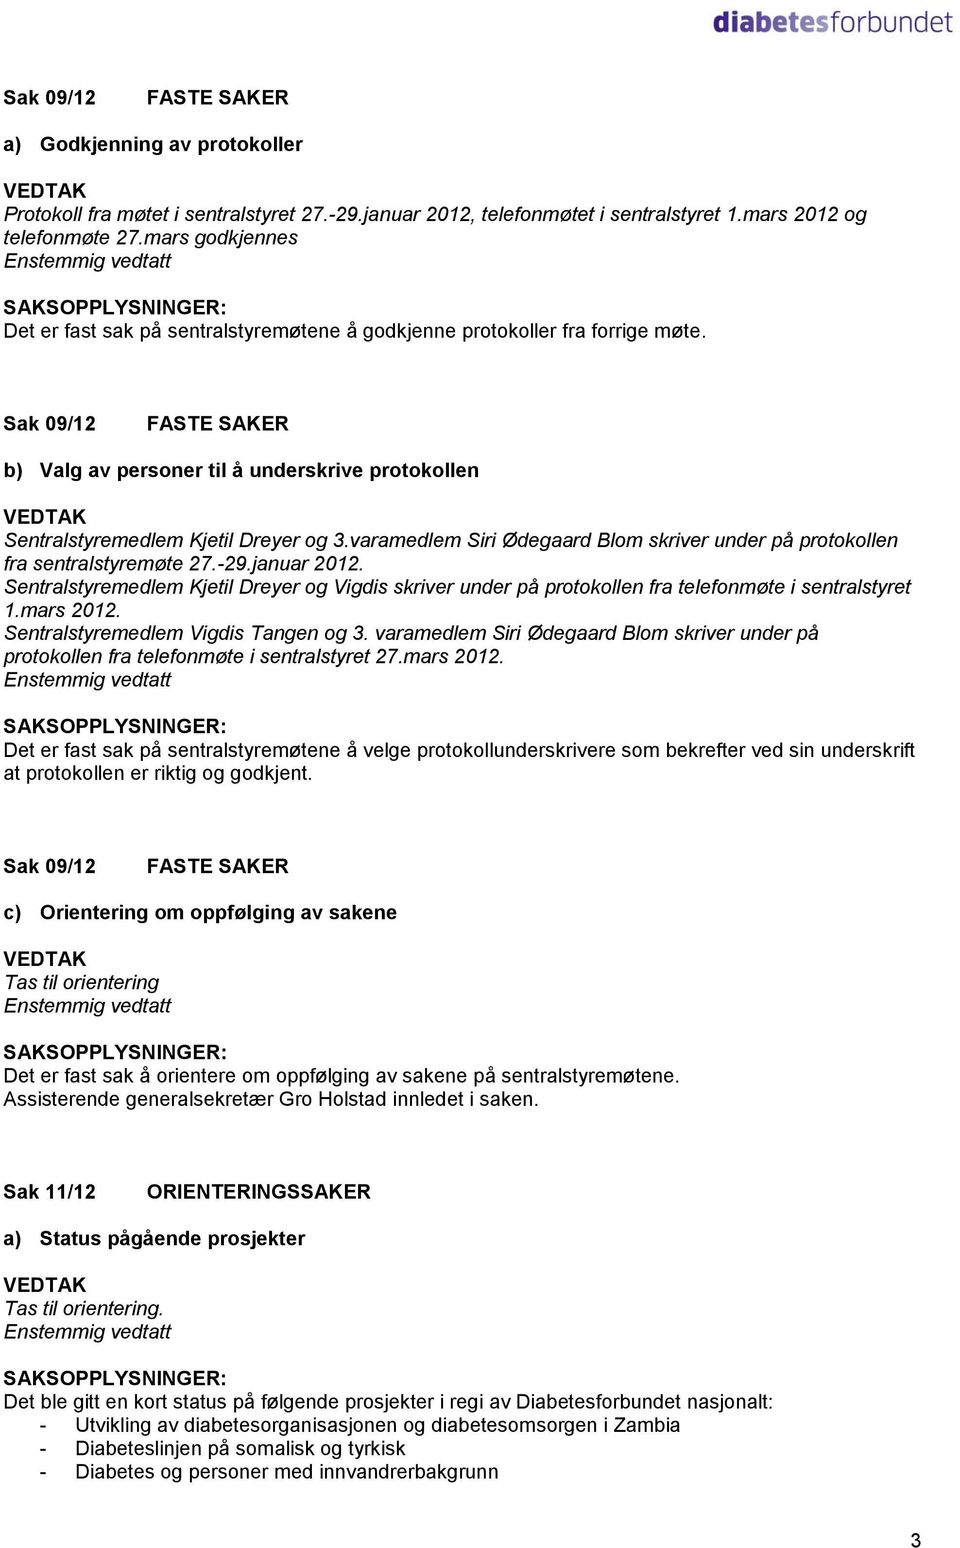 Sak 09/12 FASTE SAKER b) Valg av personer til å underskrive protokollen Sentralstyremedlem Kjetil Dreyer og 3.varamedlem Siri Ødegaard Blom skriver under på protokollen fra sentralstyremøte 27.-29.